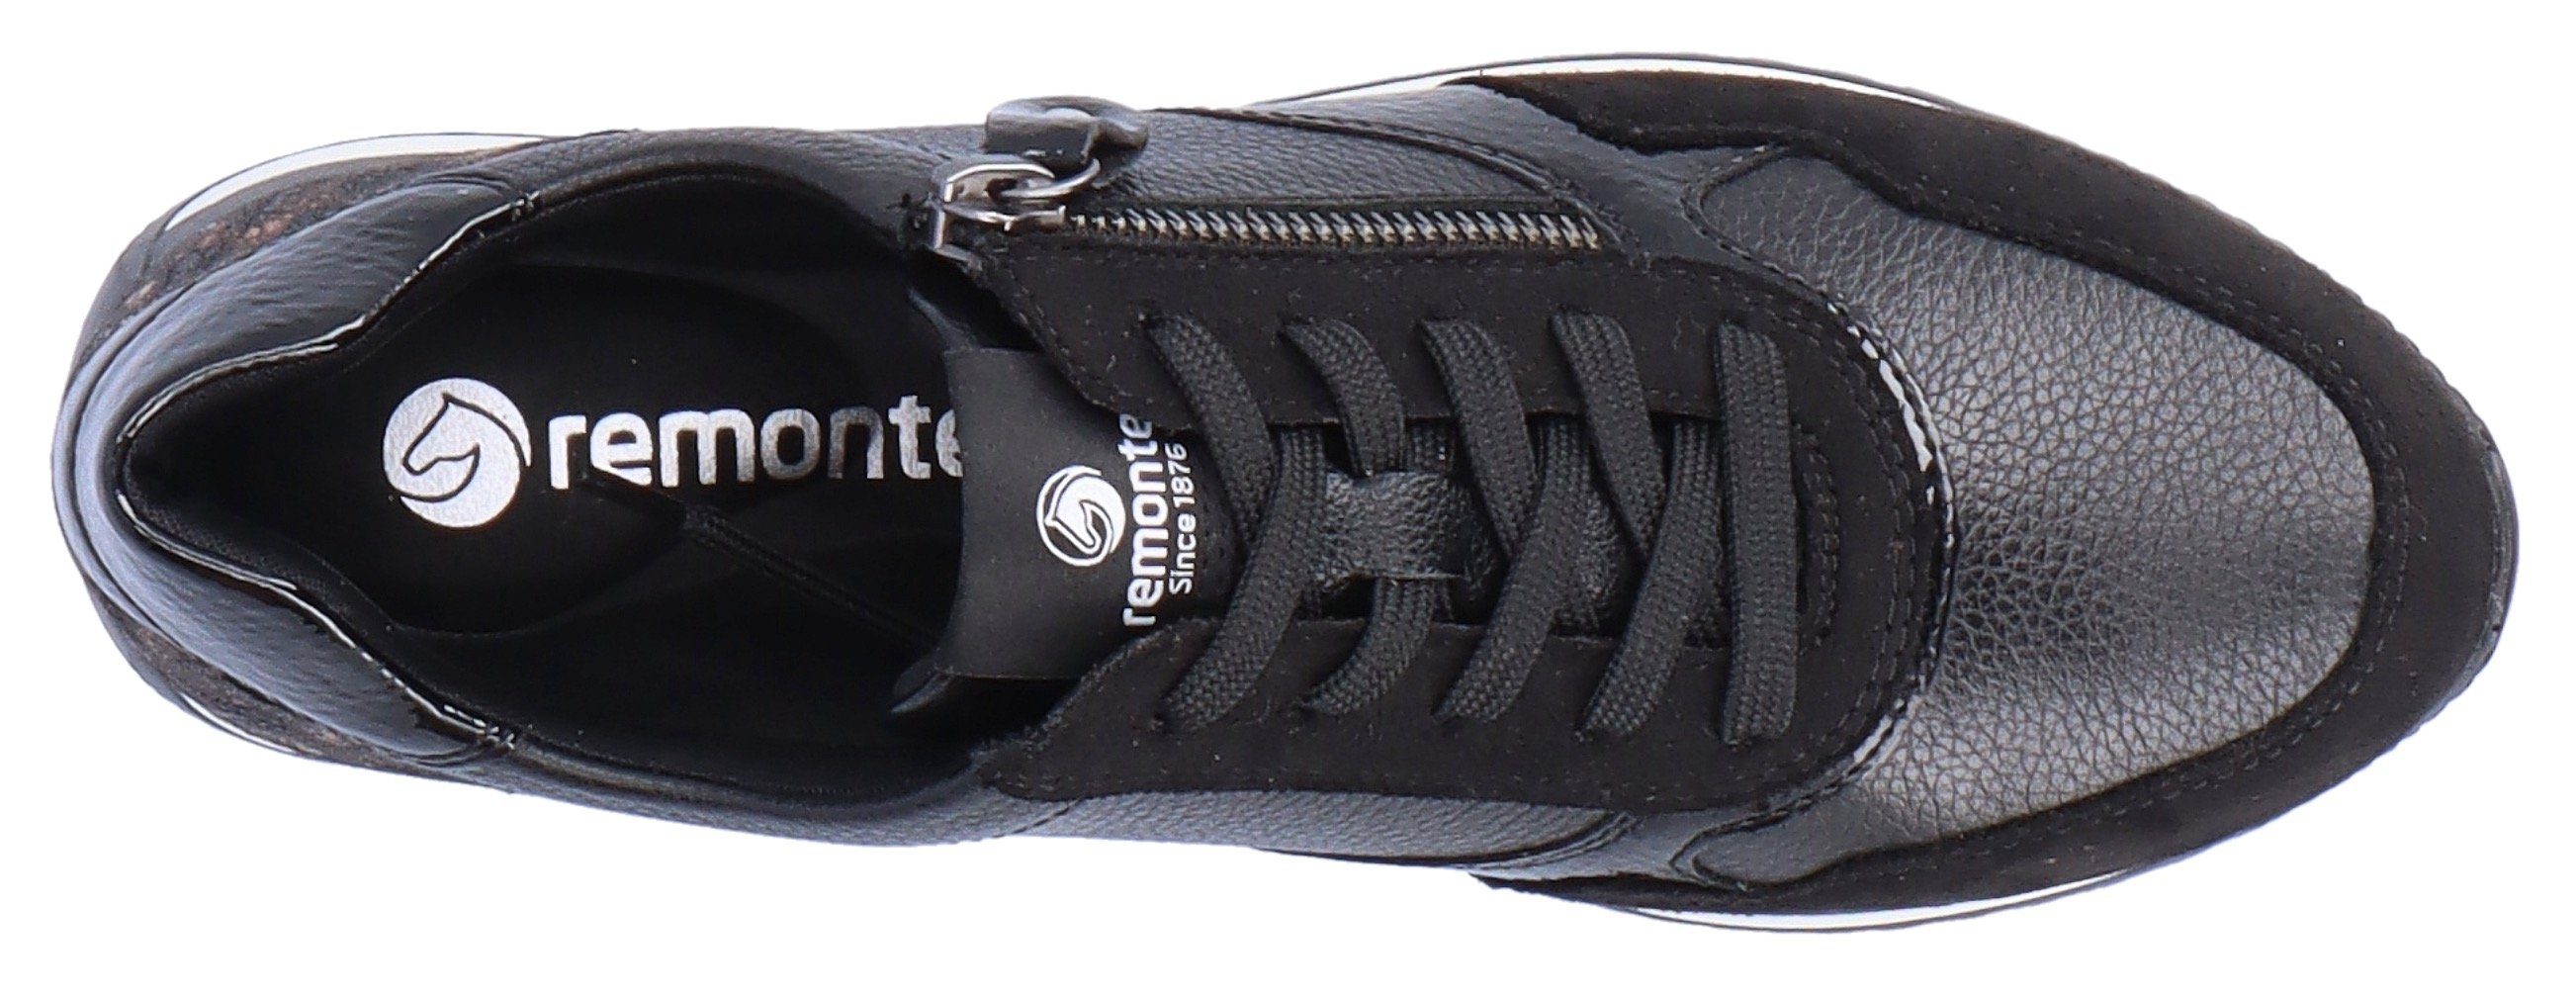 Remonte Sneaker mit schwarz (01) Wechselfußbett praktischem